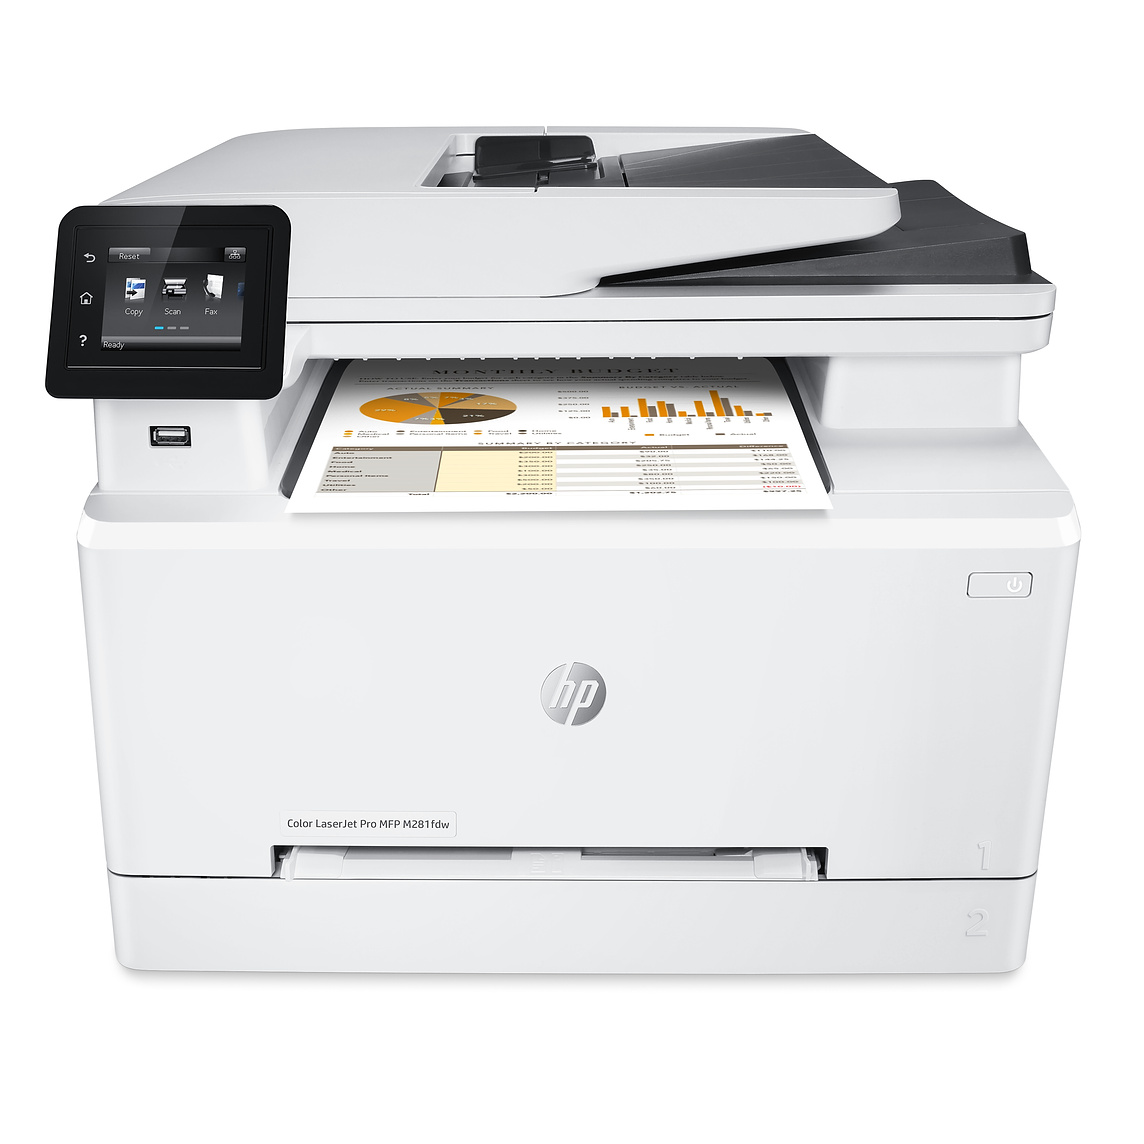 A late model HP LaserJet Printer